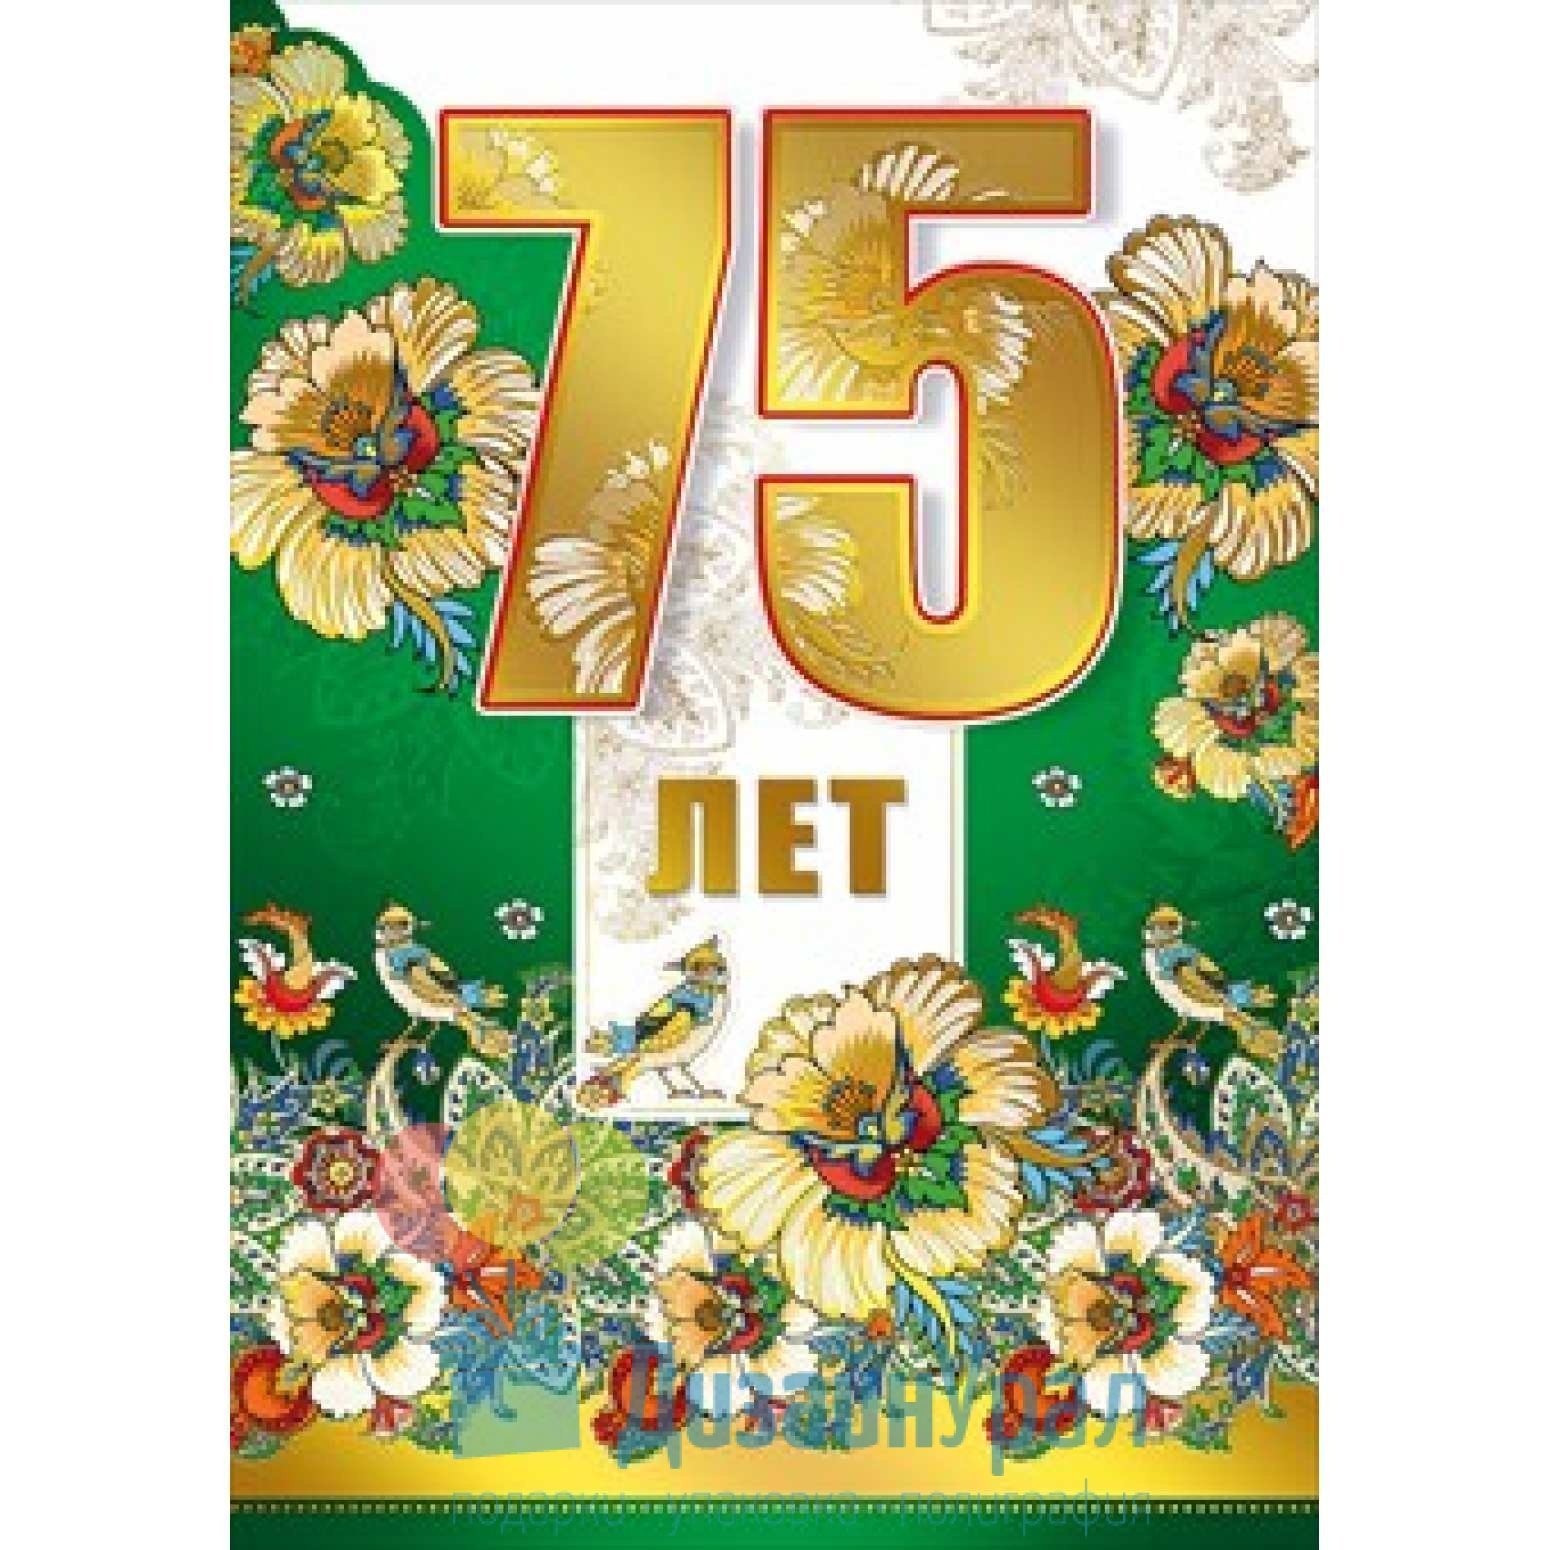 С днем рождения 75 летием женщине открытки